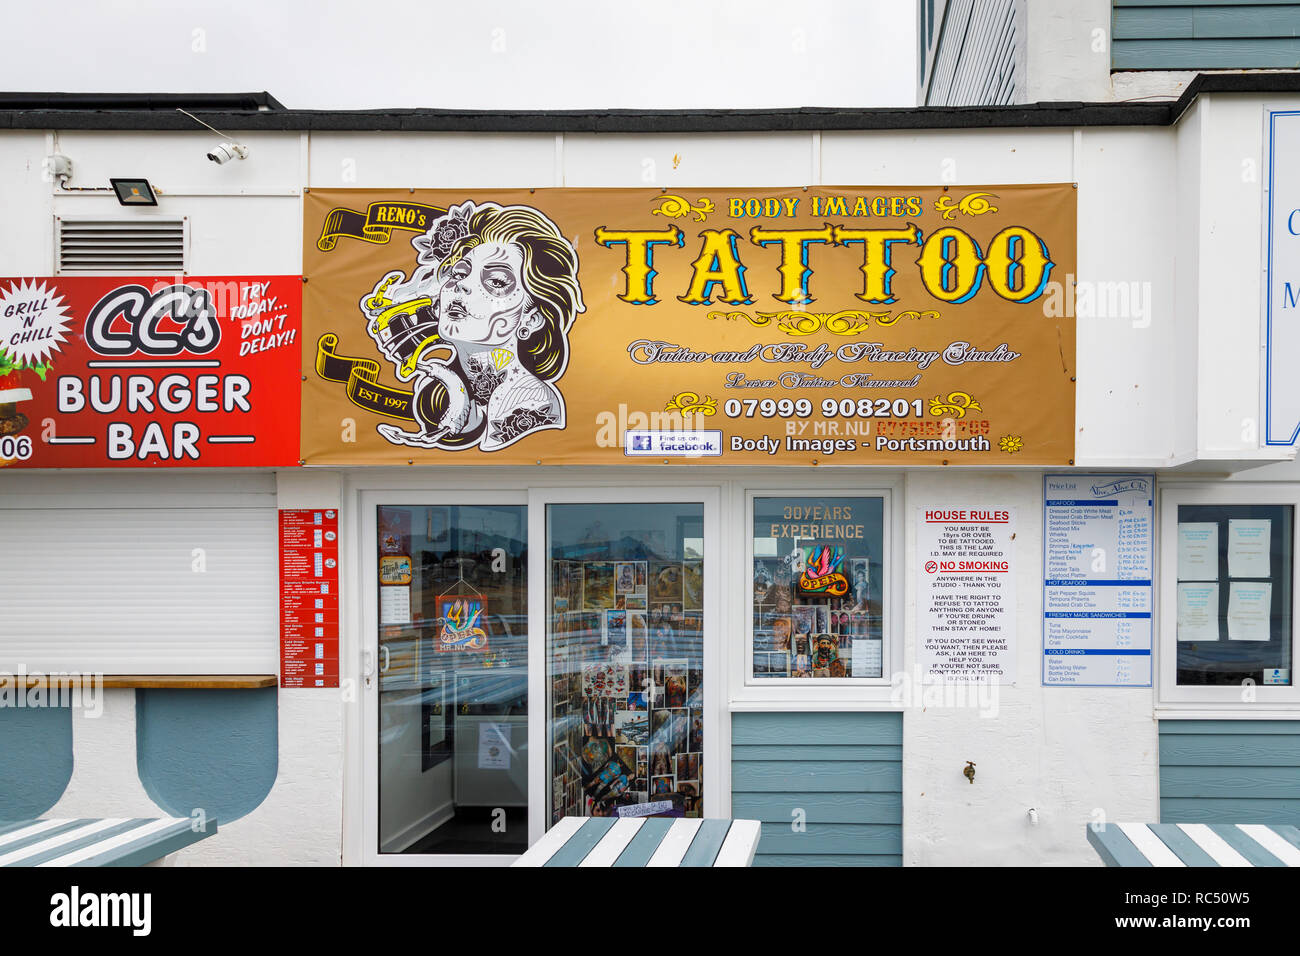 Immagini body tattoo e body piercing studio per body art su South Parade Pier, Southsea, Portsmouth, south coast Inghilterra, Regno Unito Foto Stock